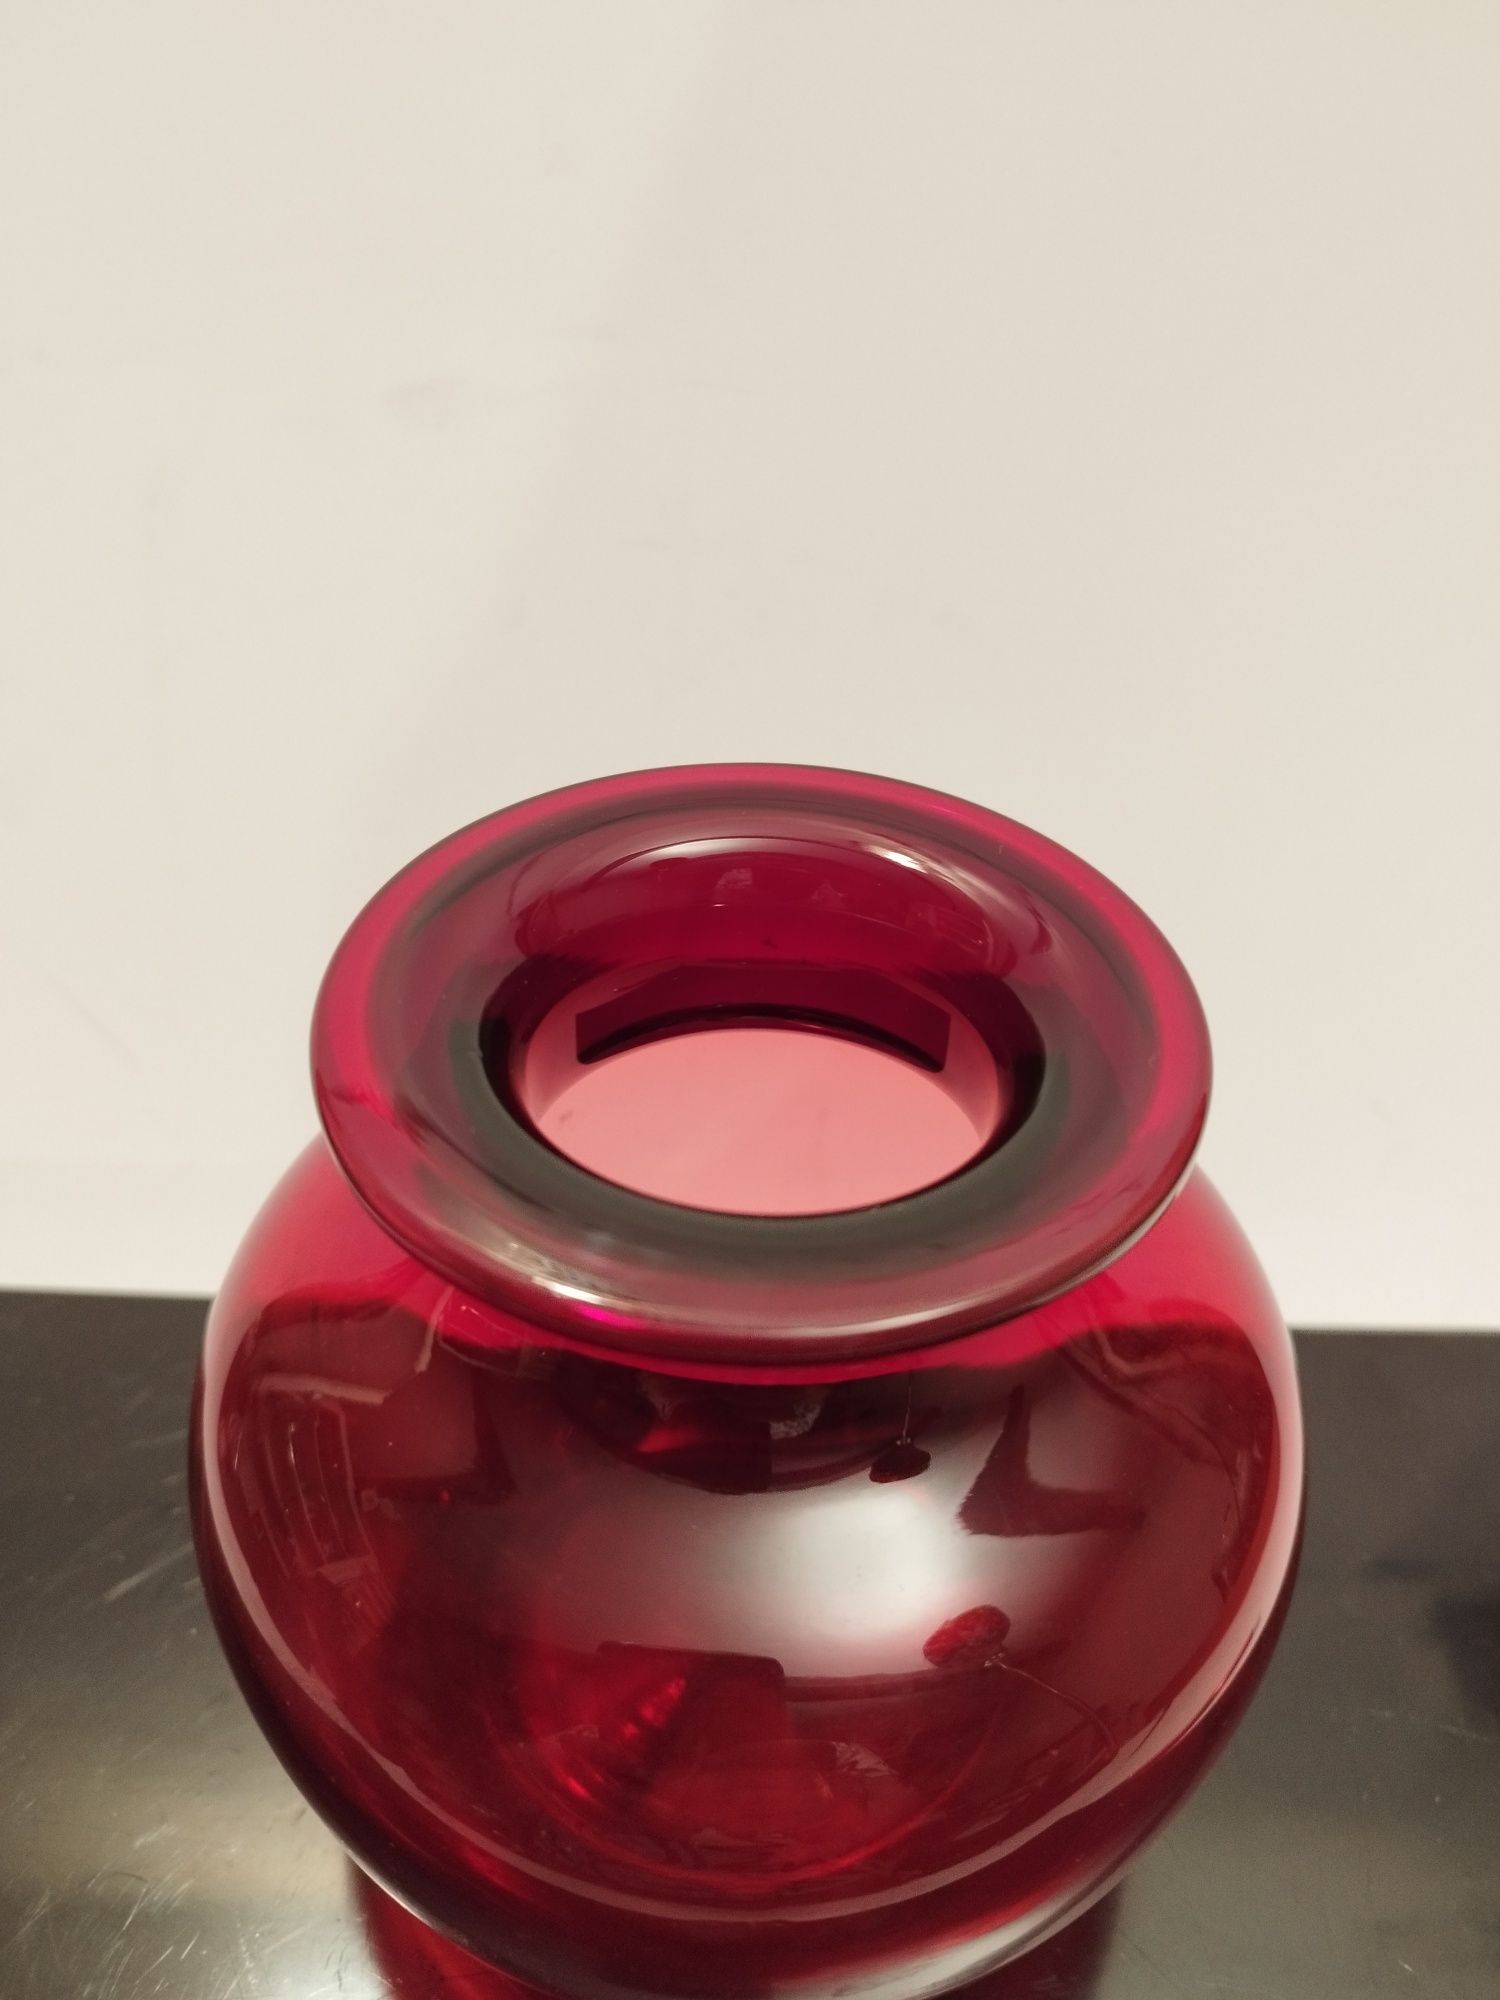 Rubinowy wazon tarnowiec kolorowe szkło prl vintage retro prl vintage